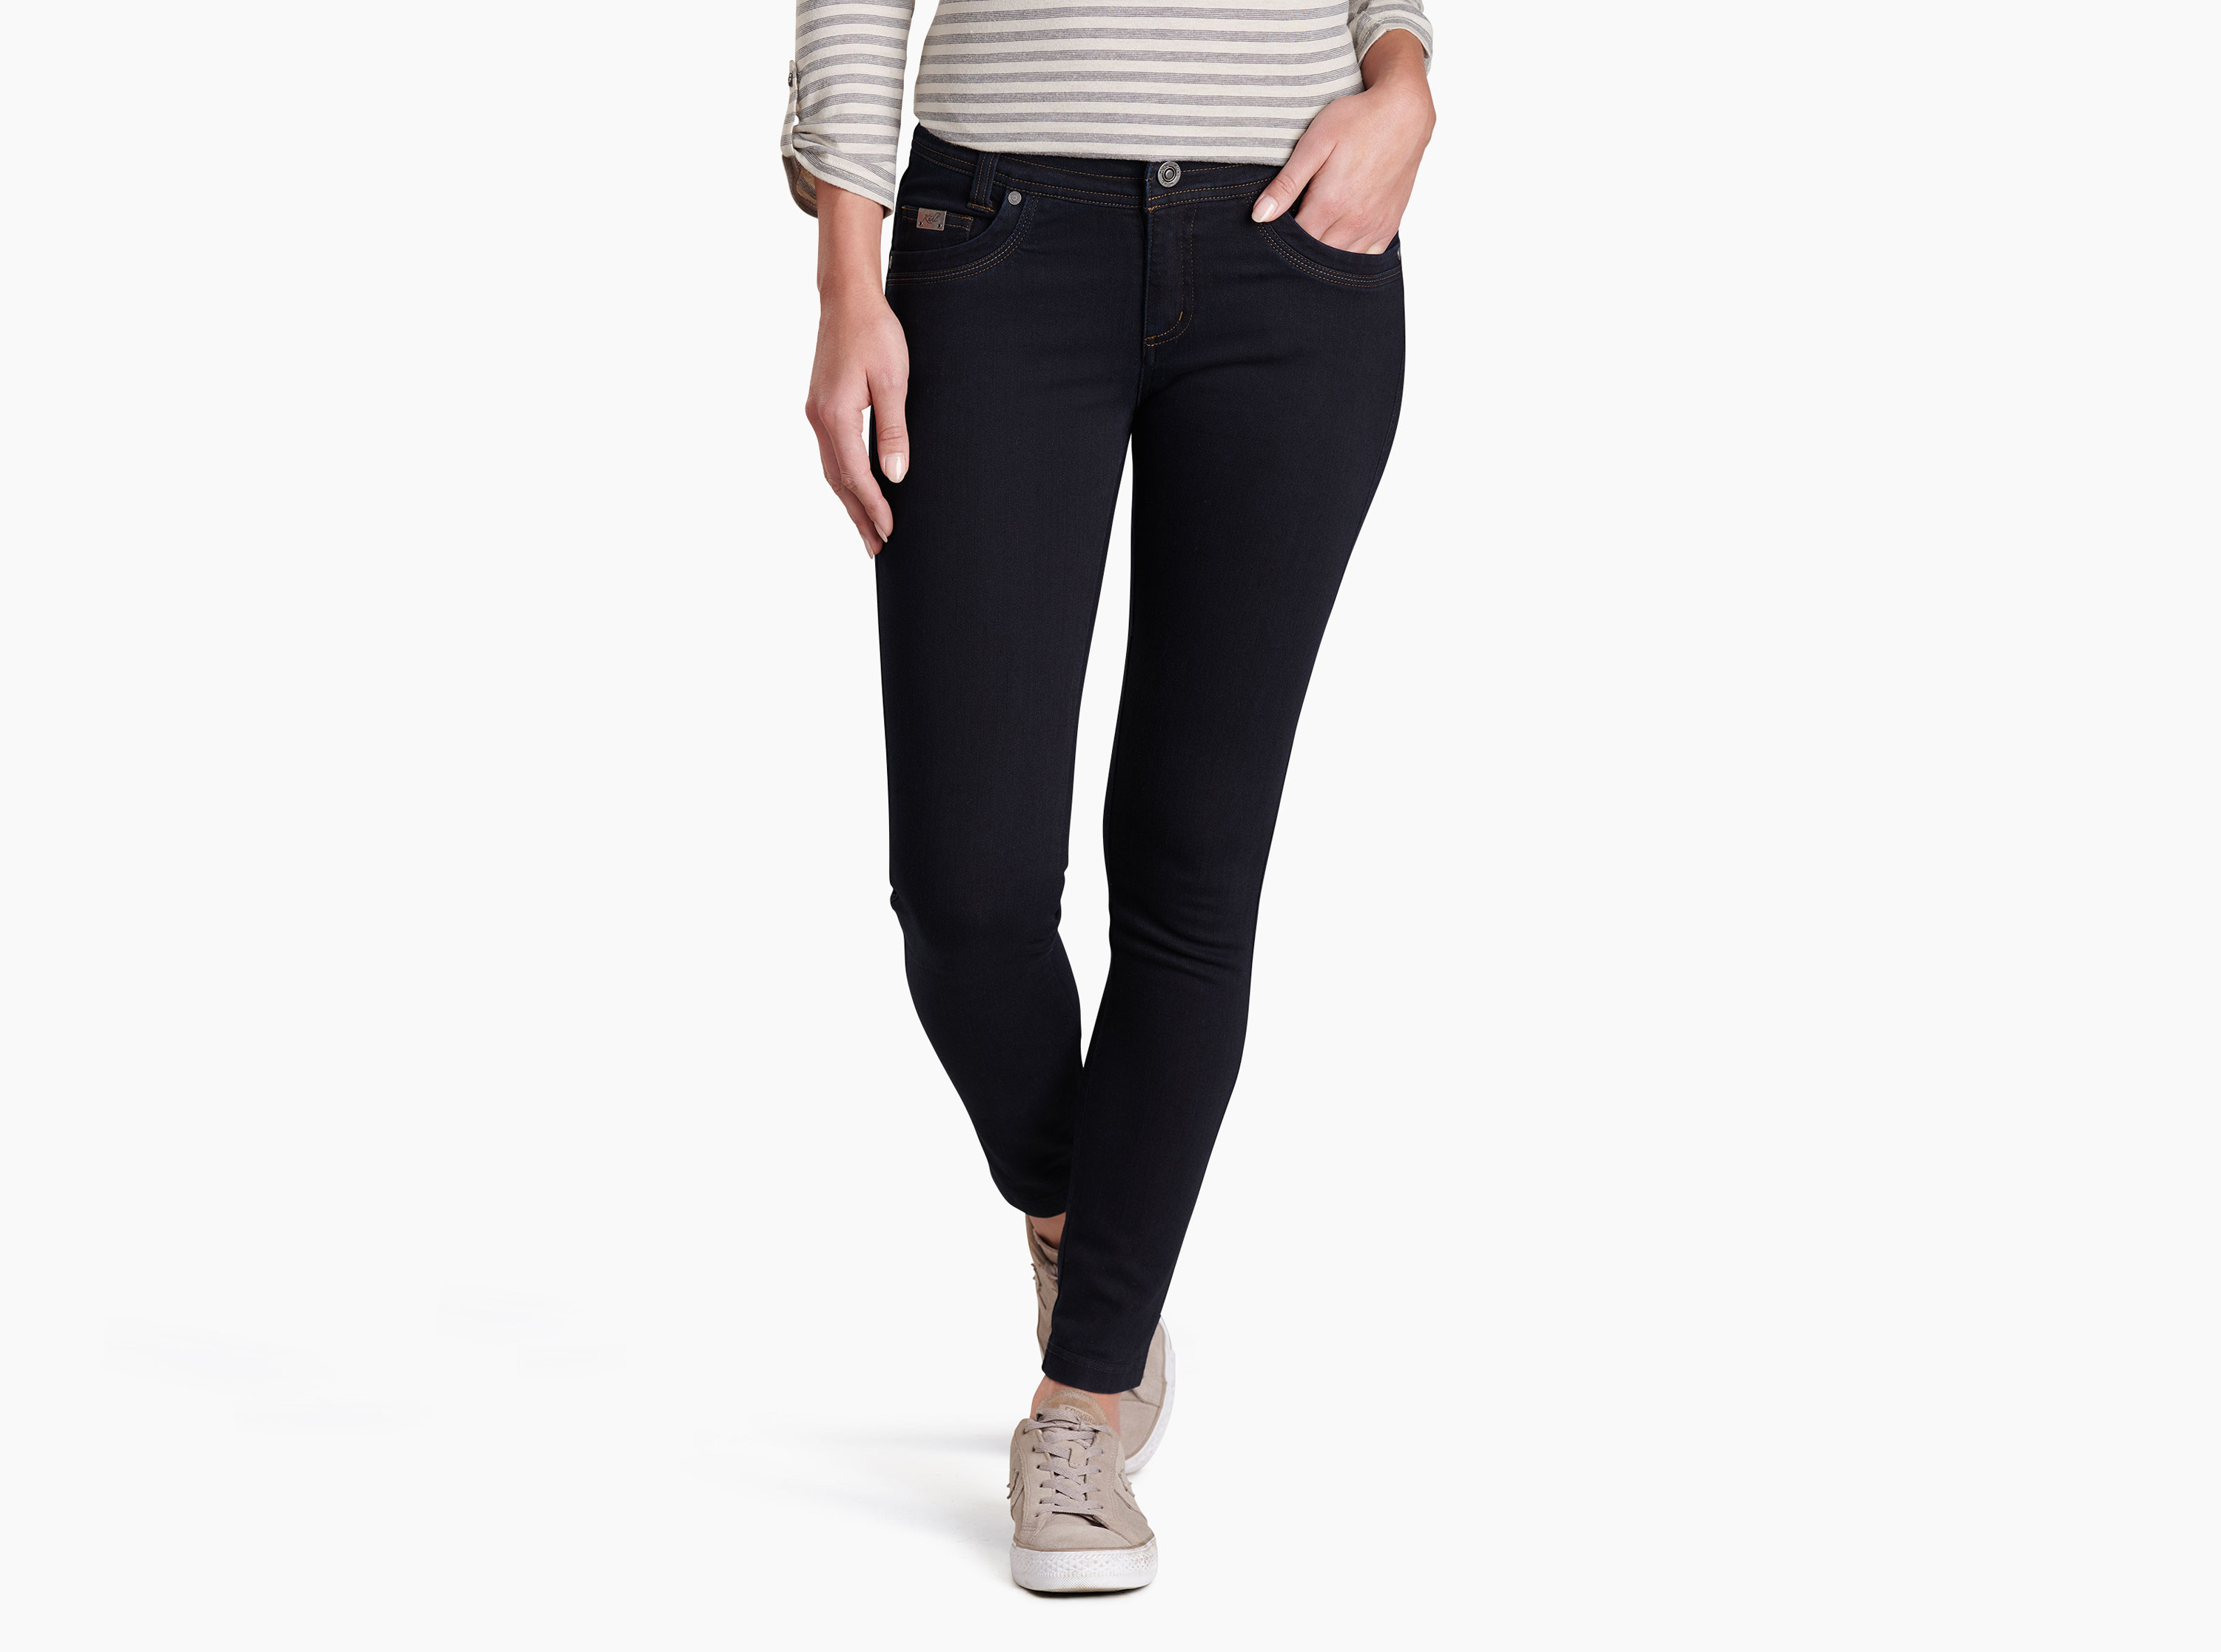 Danzr™ Skinny Jean in Women's Pants